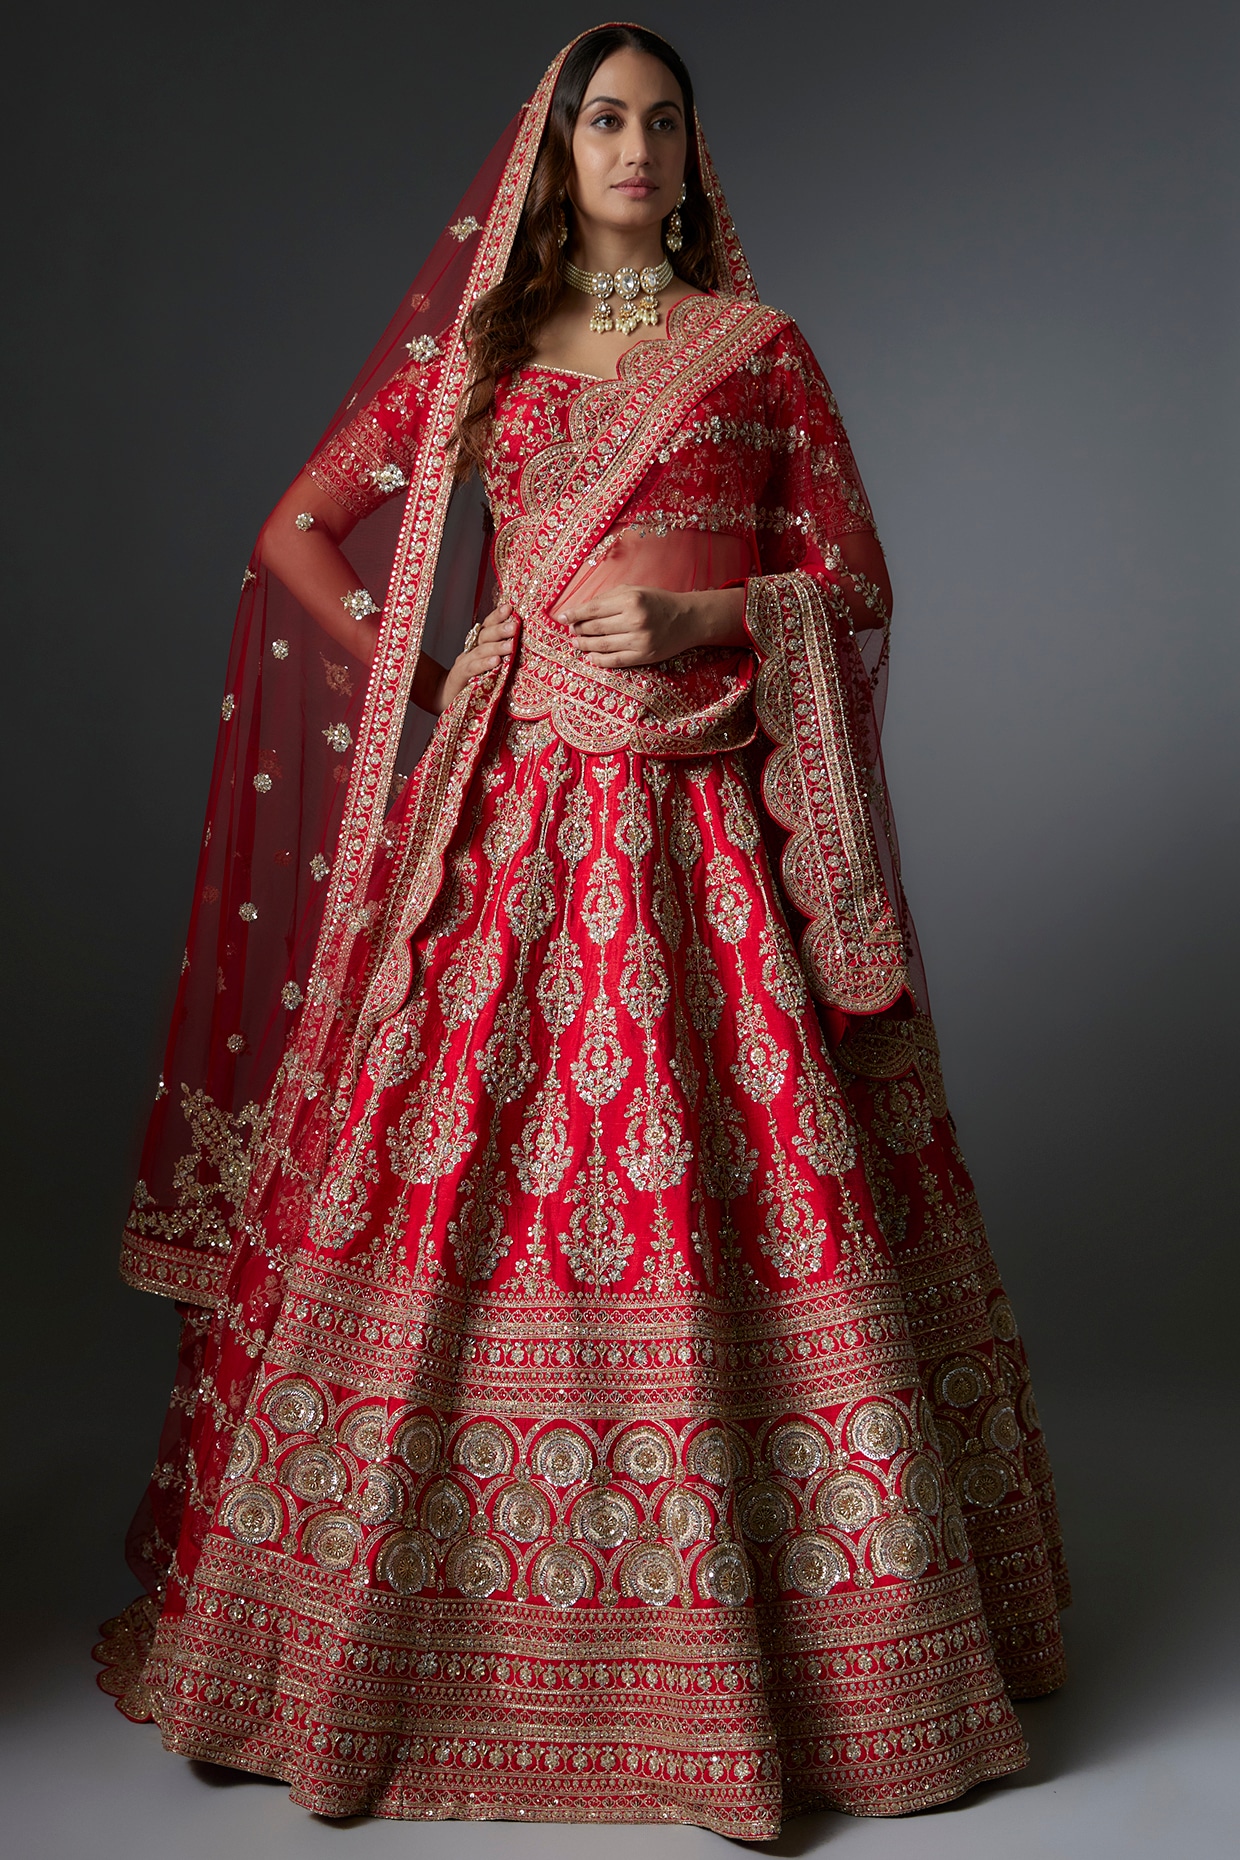 Brides sisters/cousins Mehndi dresses | Pakistani wedding dresses, Bridal  dresses, Pakistani formal dresses